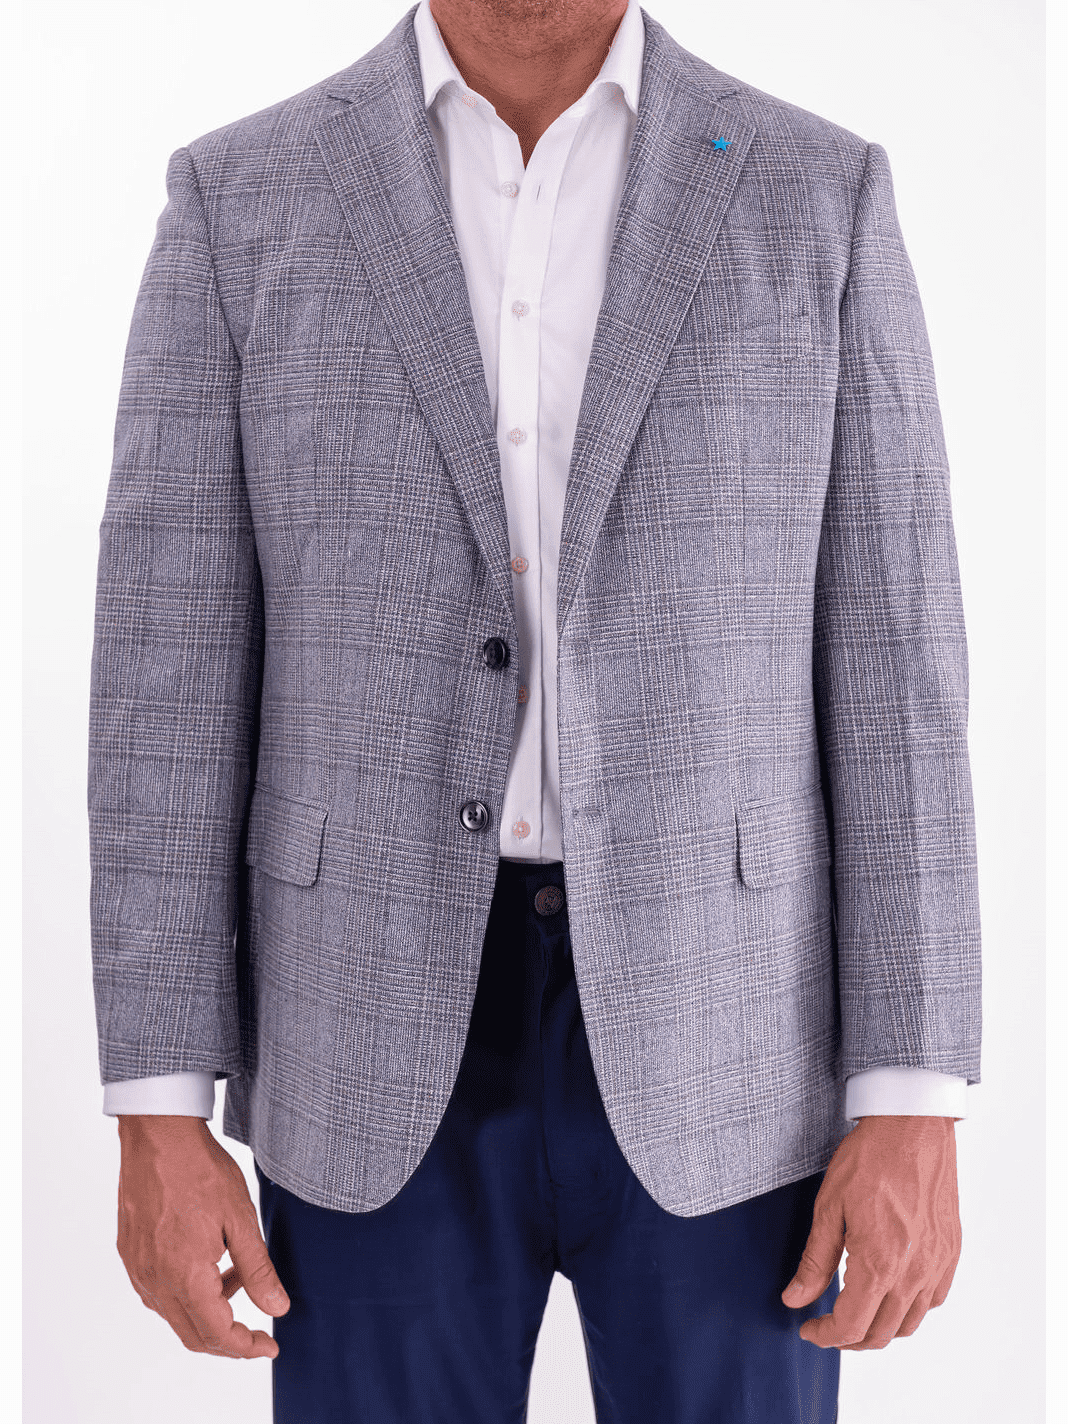 Blujacket BLAZERS 40R Blujacket Mens Gray & Blue Plaid Classic Fit Lanificio Di Pray Wool Blazer Sportcoat